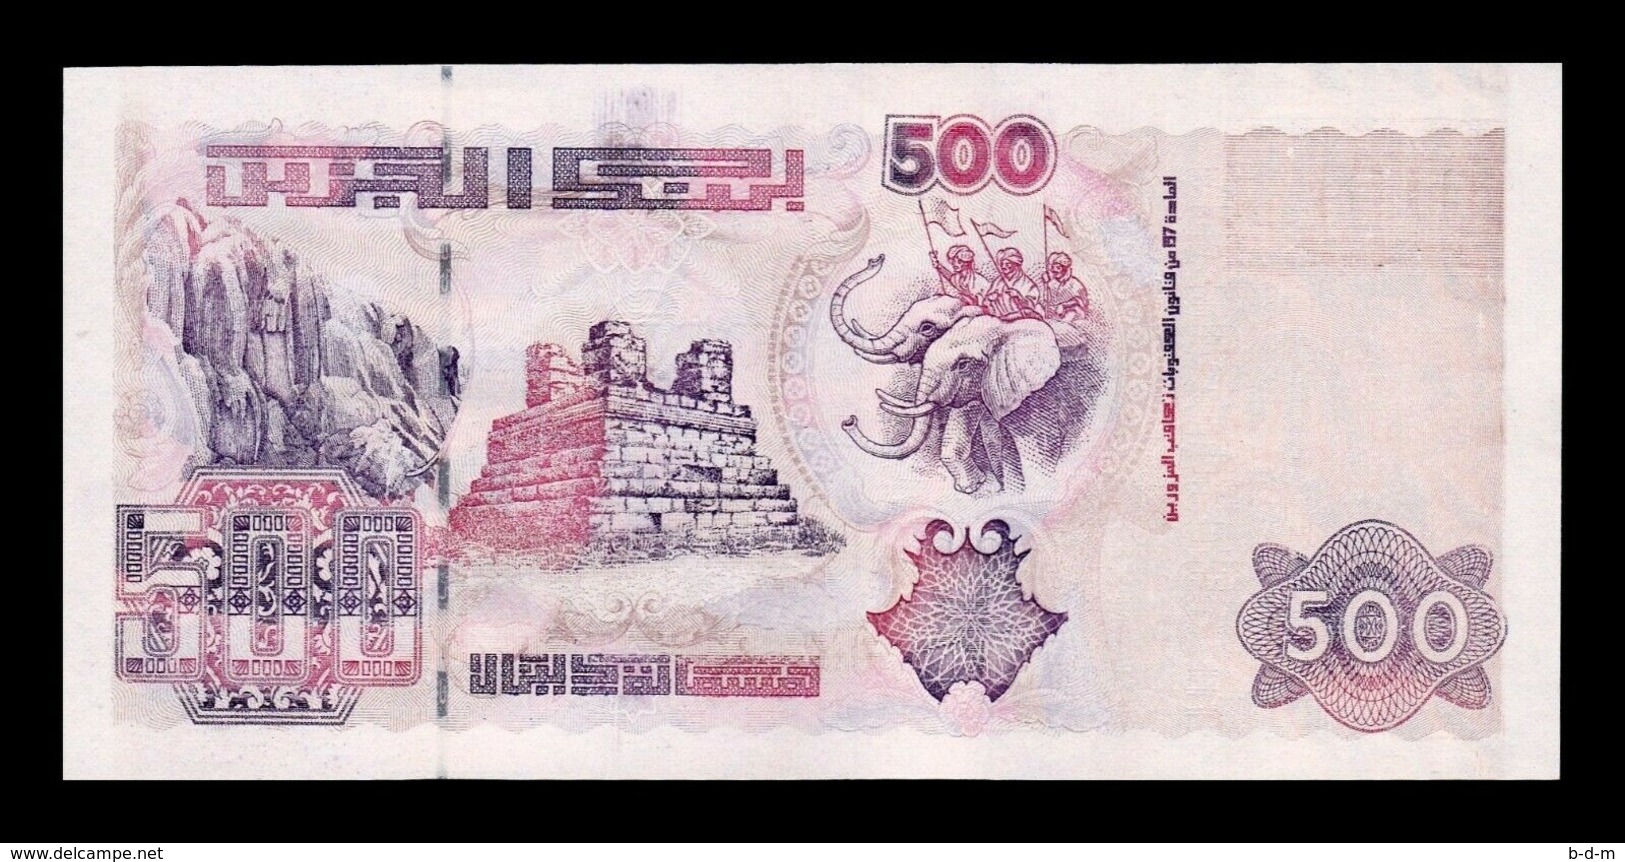 Argelia Algeria Lot Bundle 5 Banknotes 500 Dinars 1998 Pick 141 SC UNC - Argelia